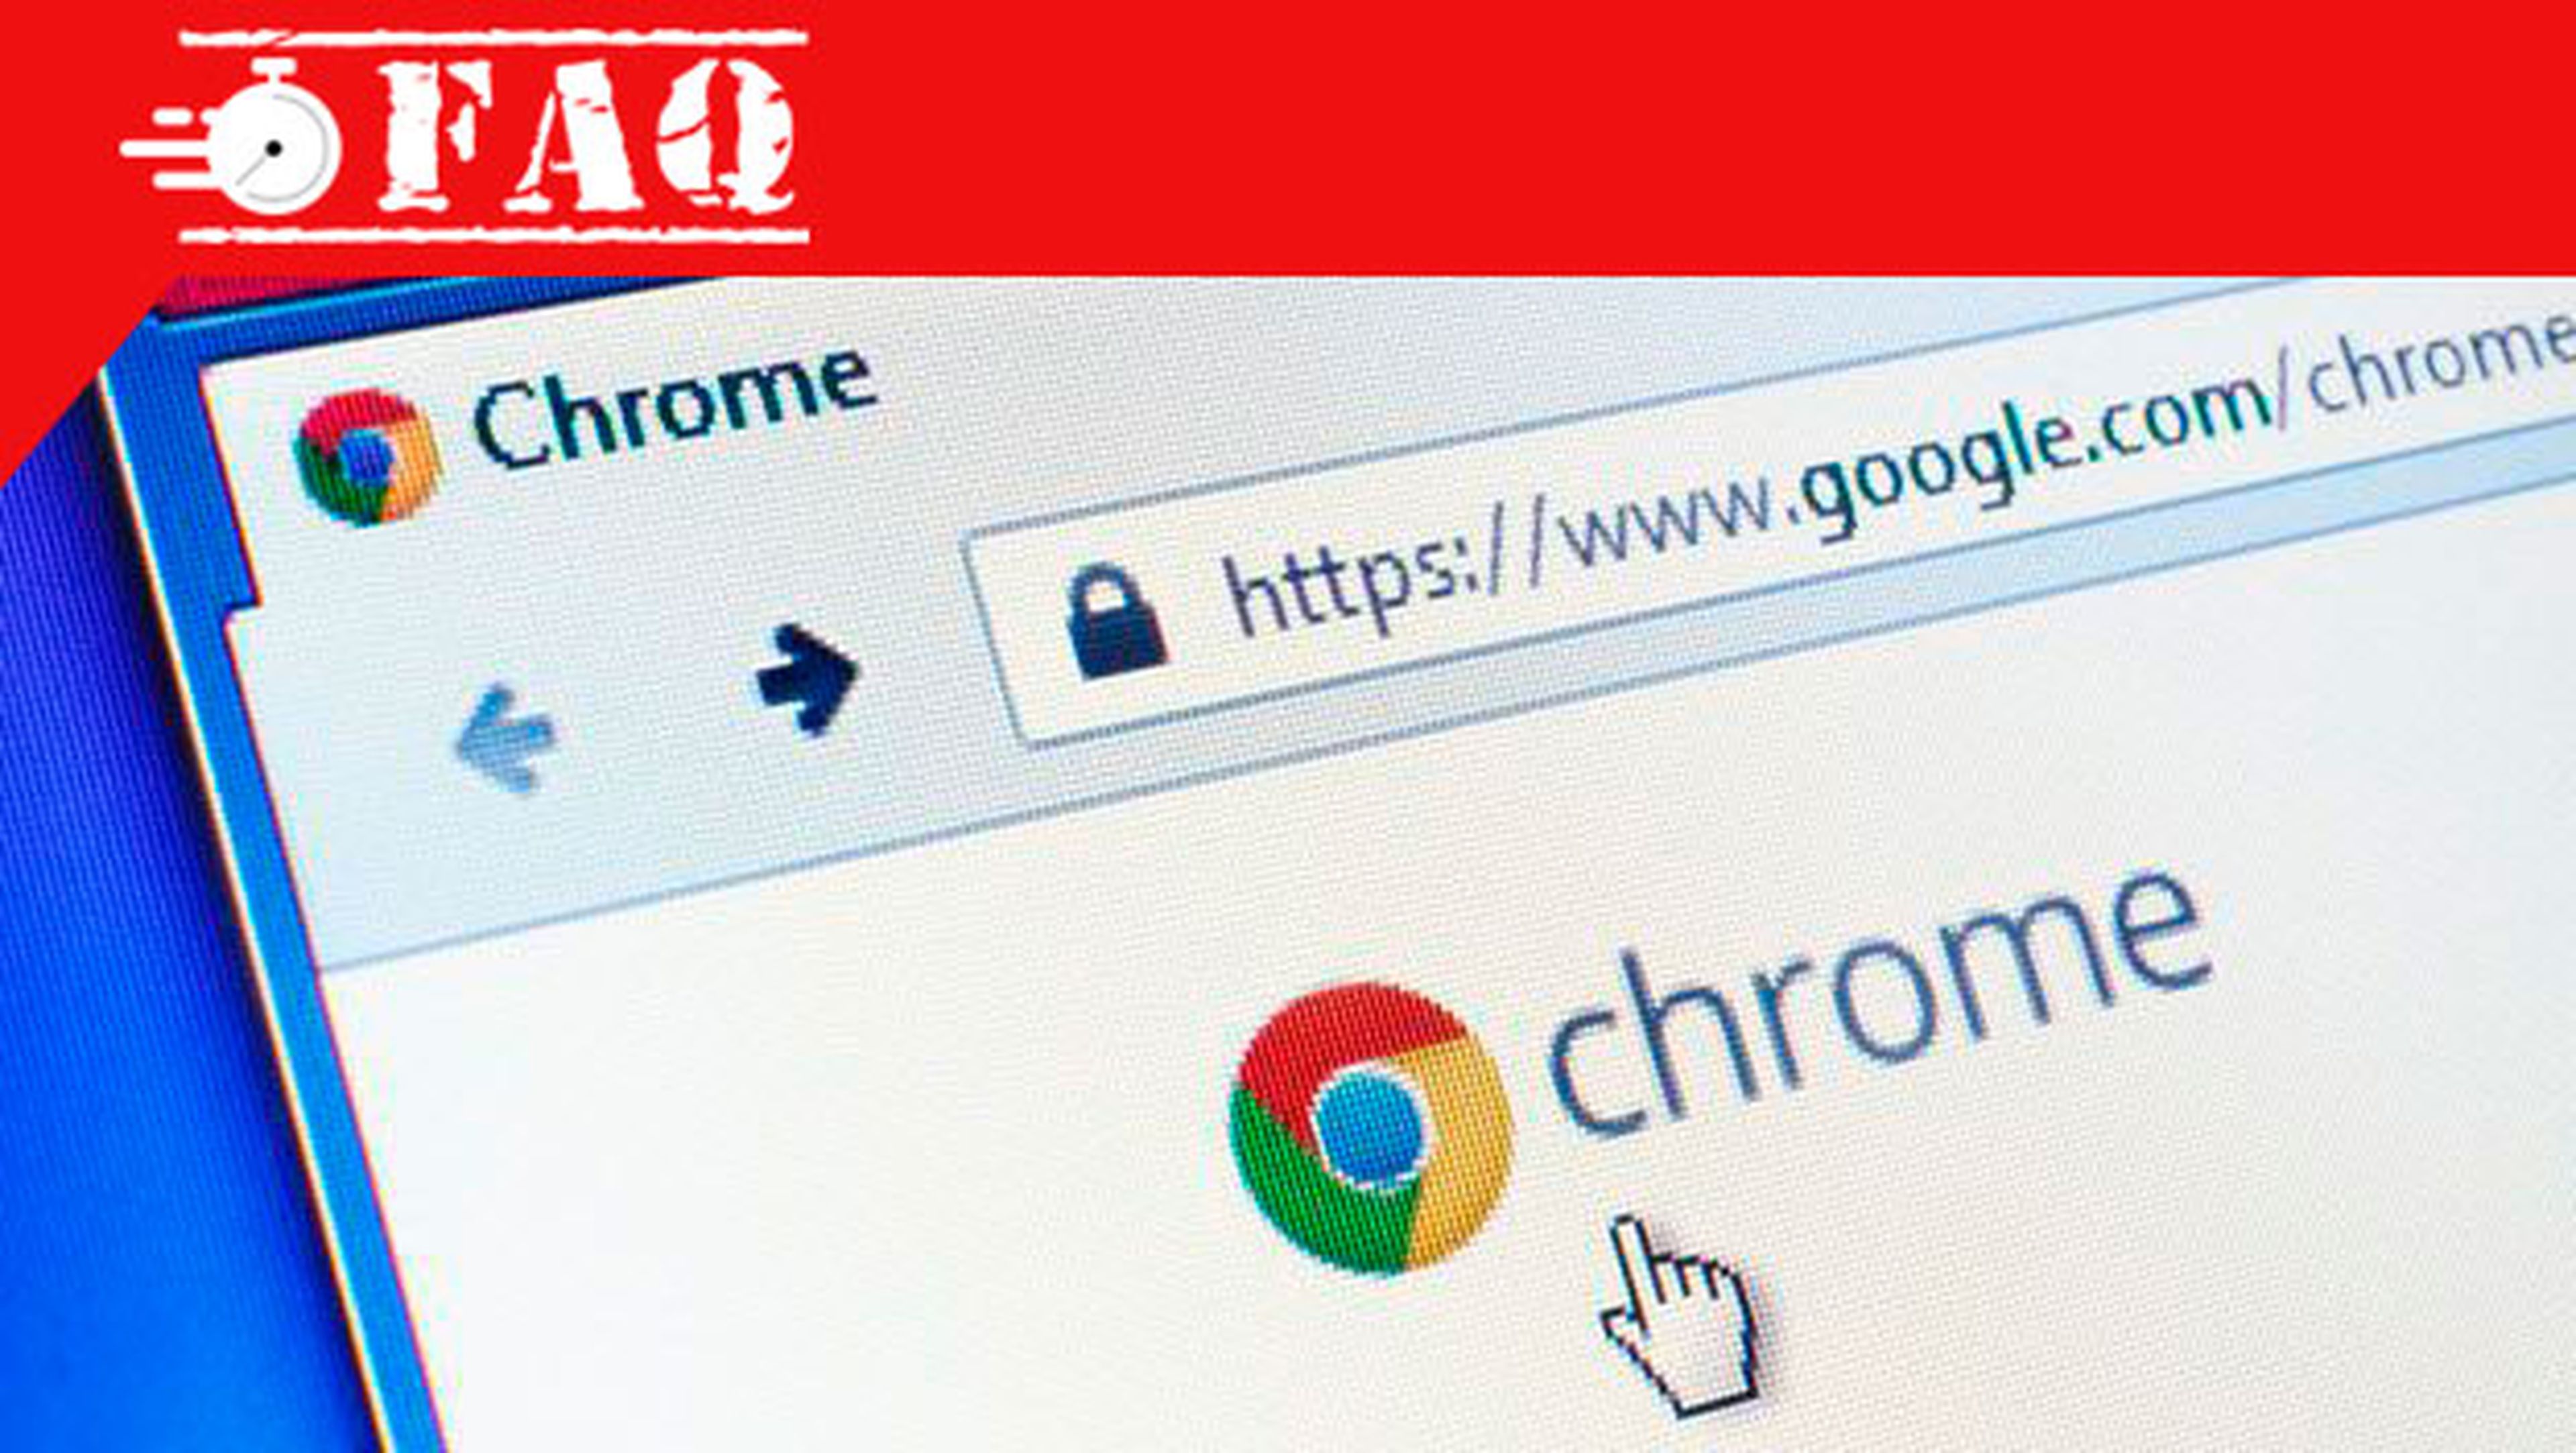 Añadir una web a favoritos en Chrome.